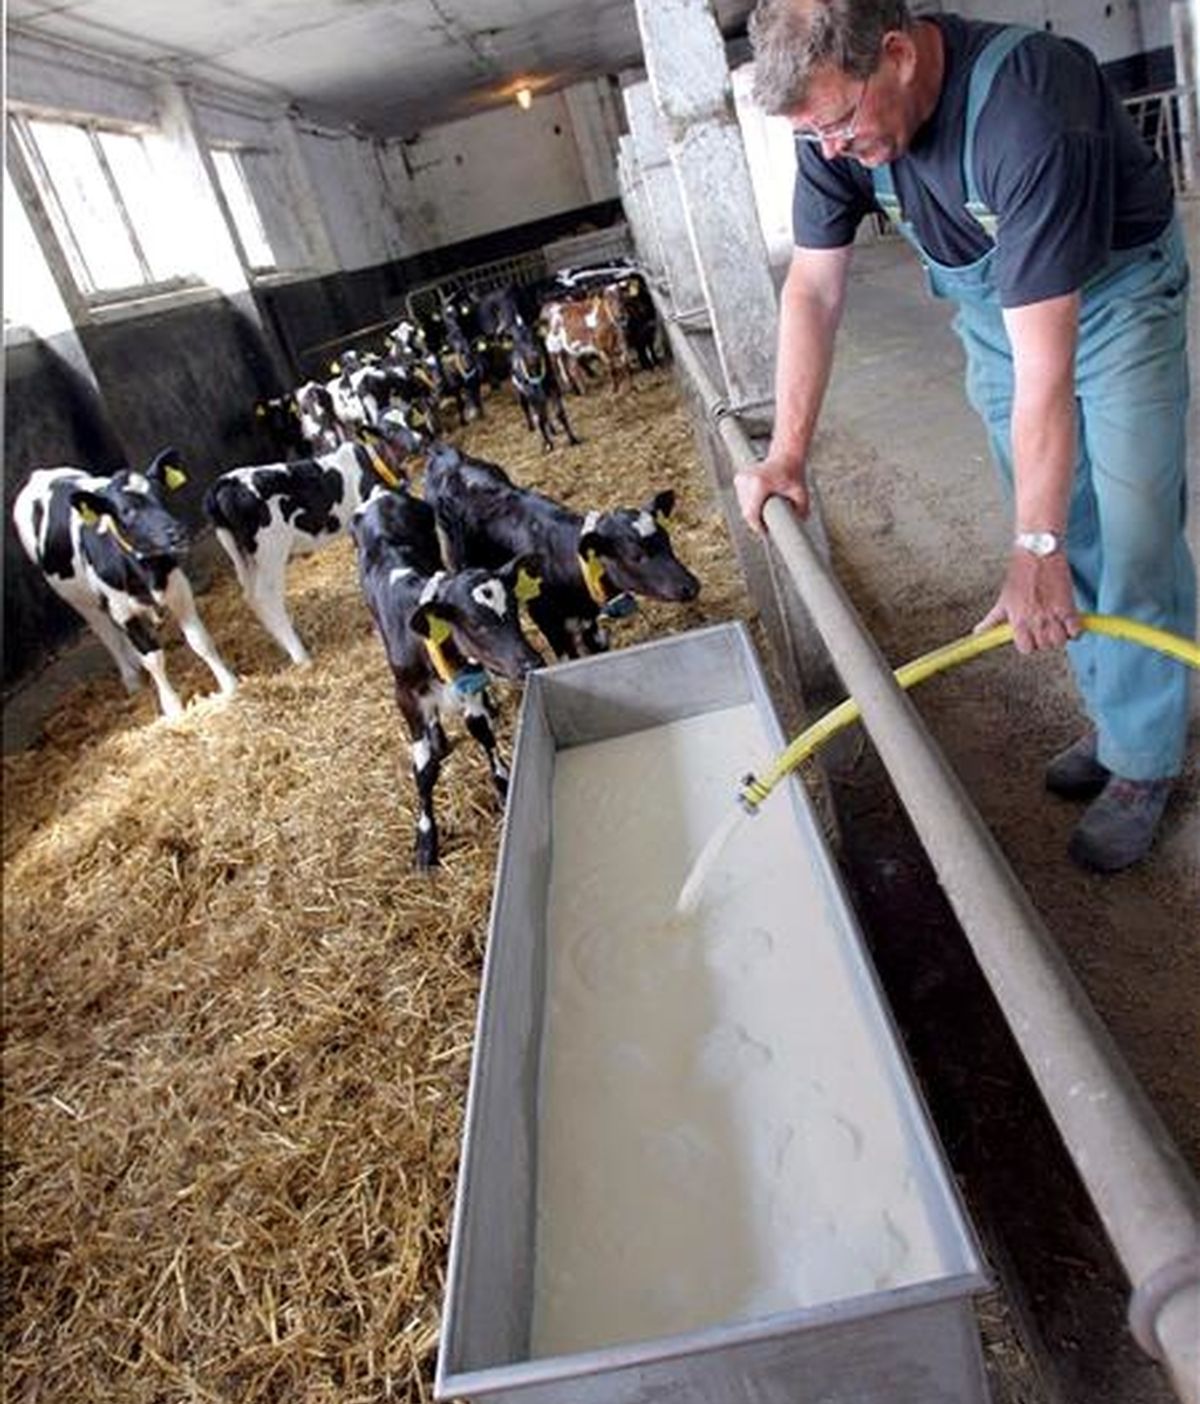 El Gobierno de Alemania analiza si existen responsabilidades penales en la contaminación con dioxina de piensos para animales, incidente que ha obligado a cerrar al menos un millar de granjas avícolas y porcinas en todo el país. EFE/Archivo